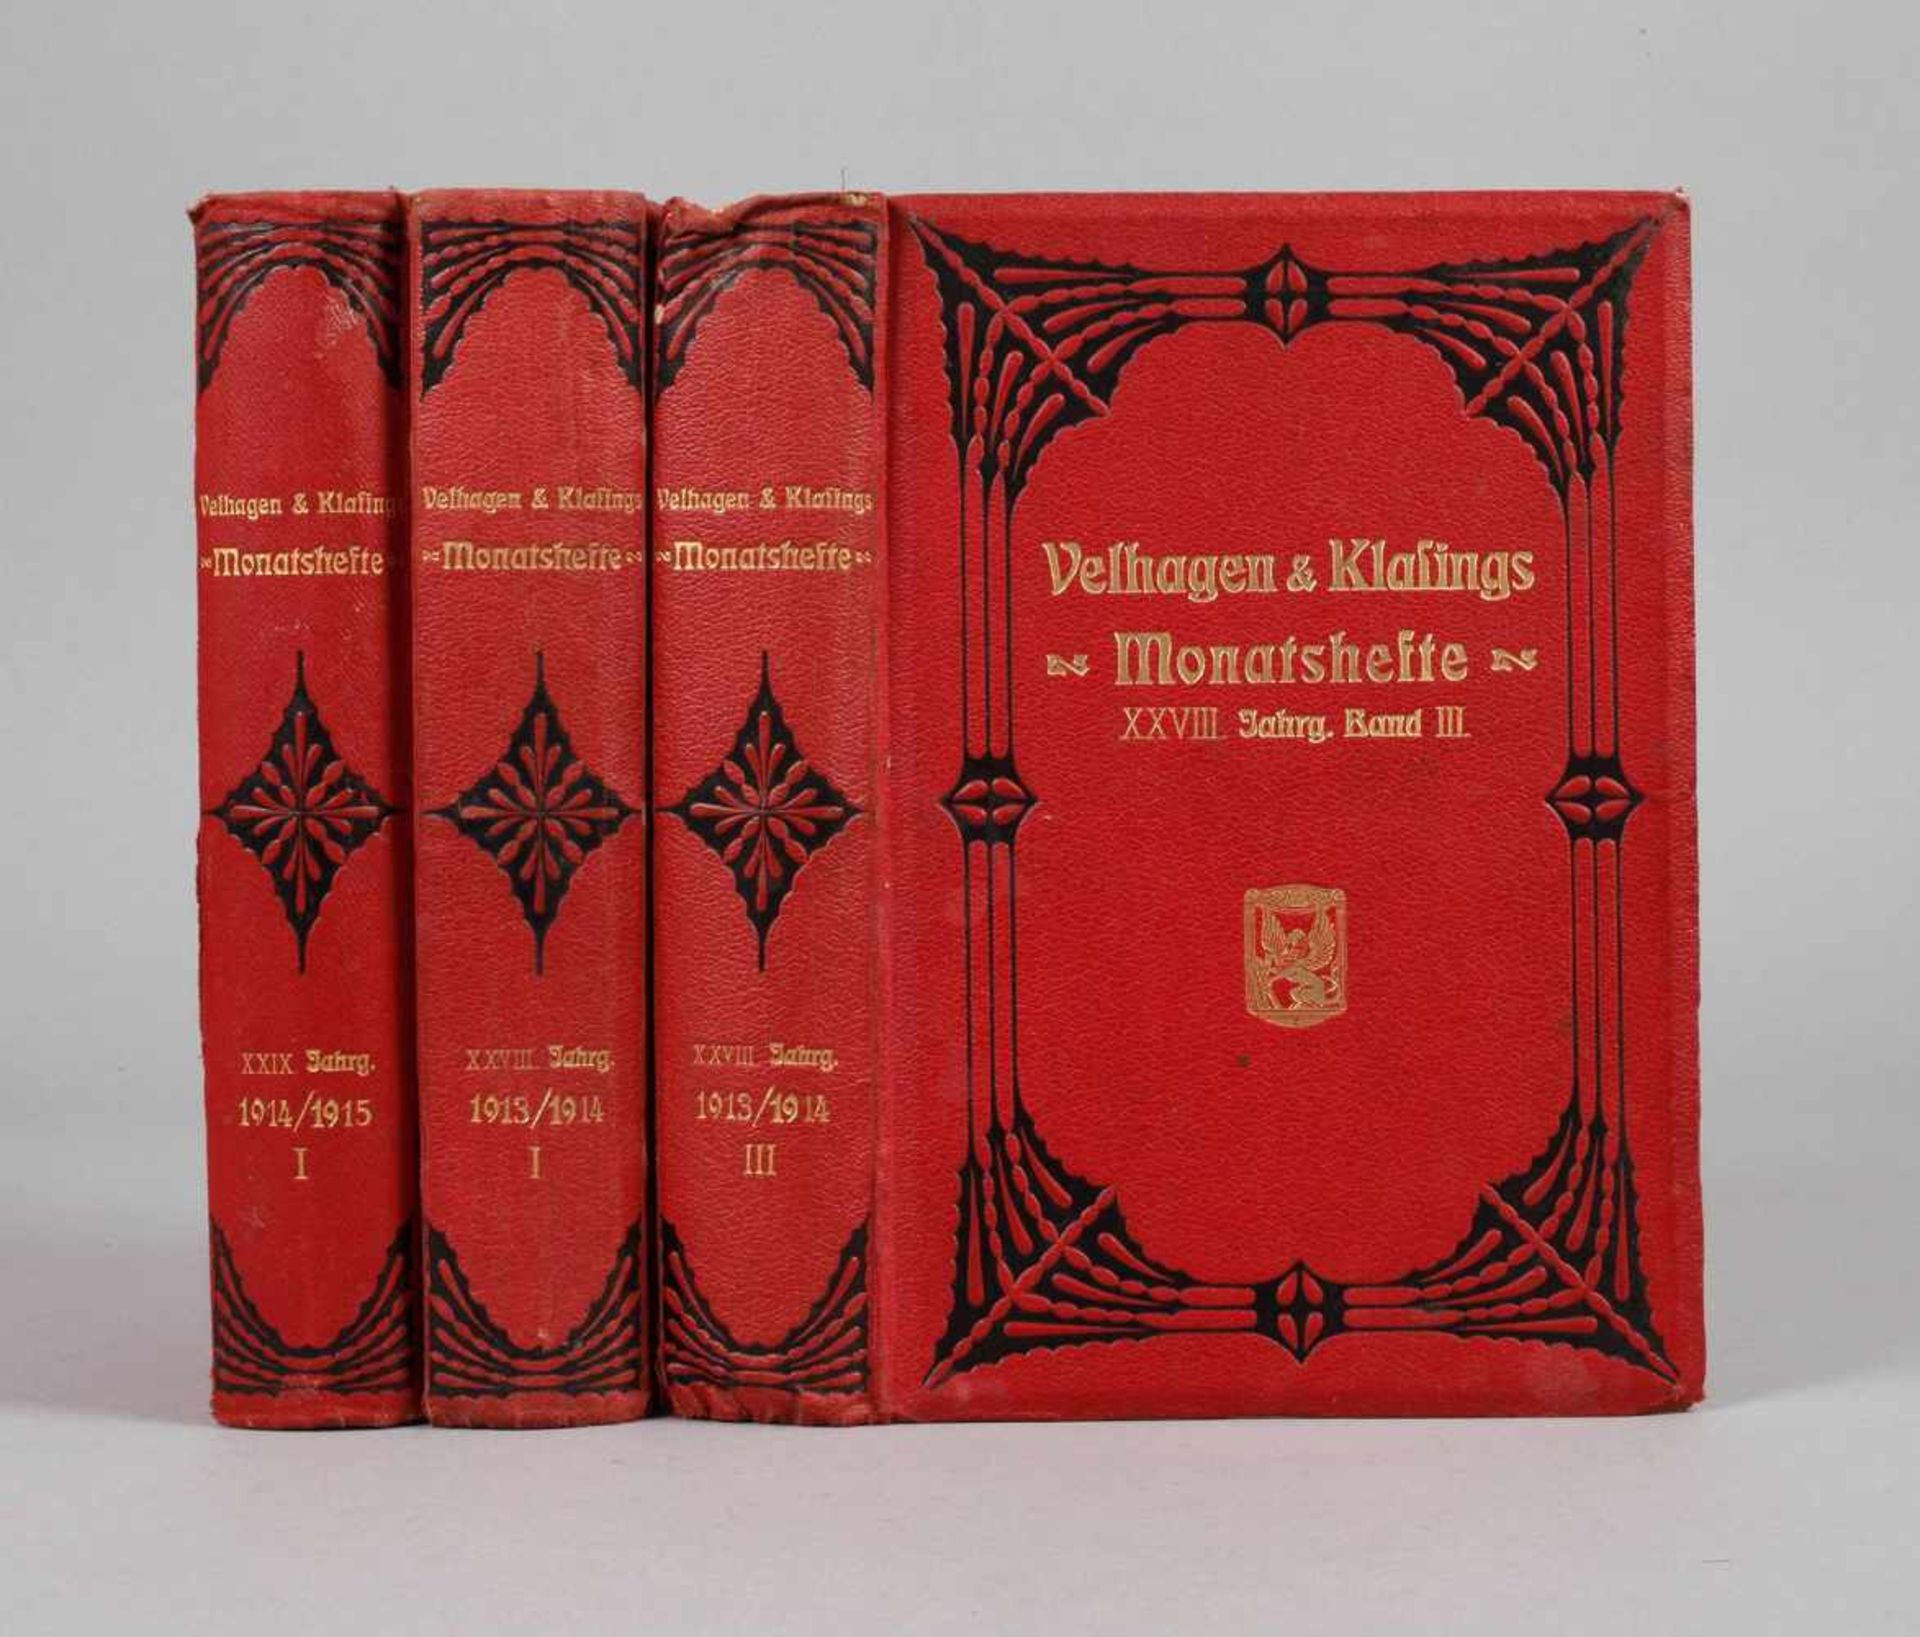 Velhagen & Klasings MonatshefteXXVIII. Jahrg. 1913/14 1. und 3. Bd. sowie XXIX. Jahrg. 1914/15 1.